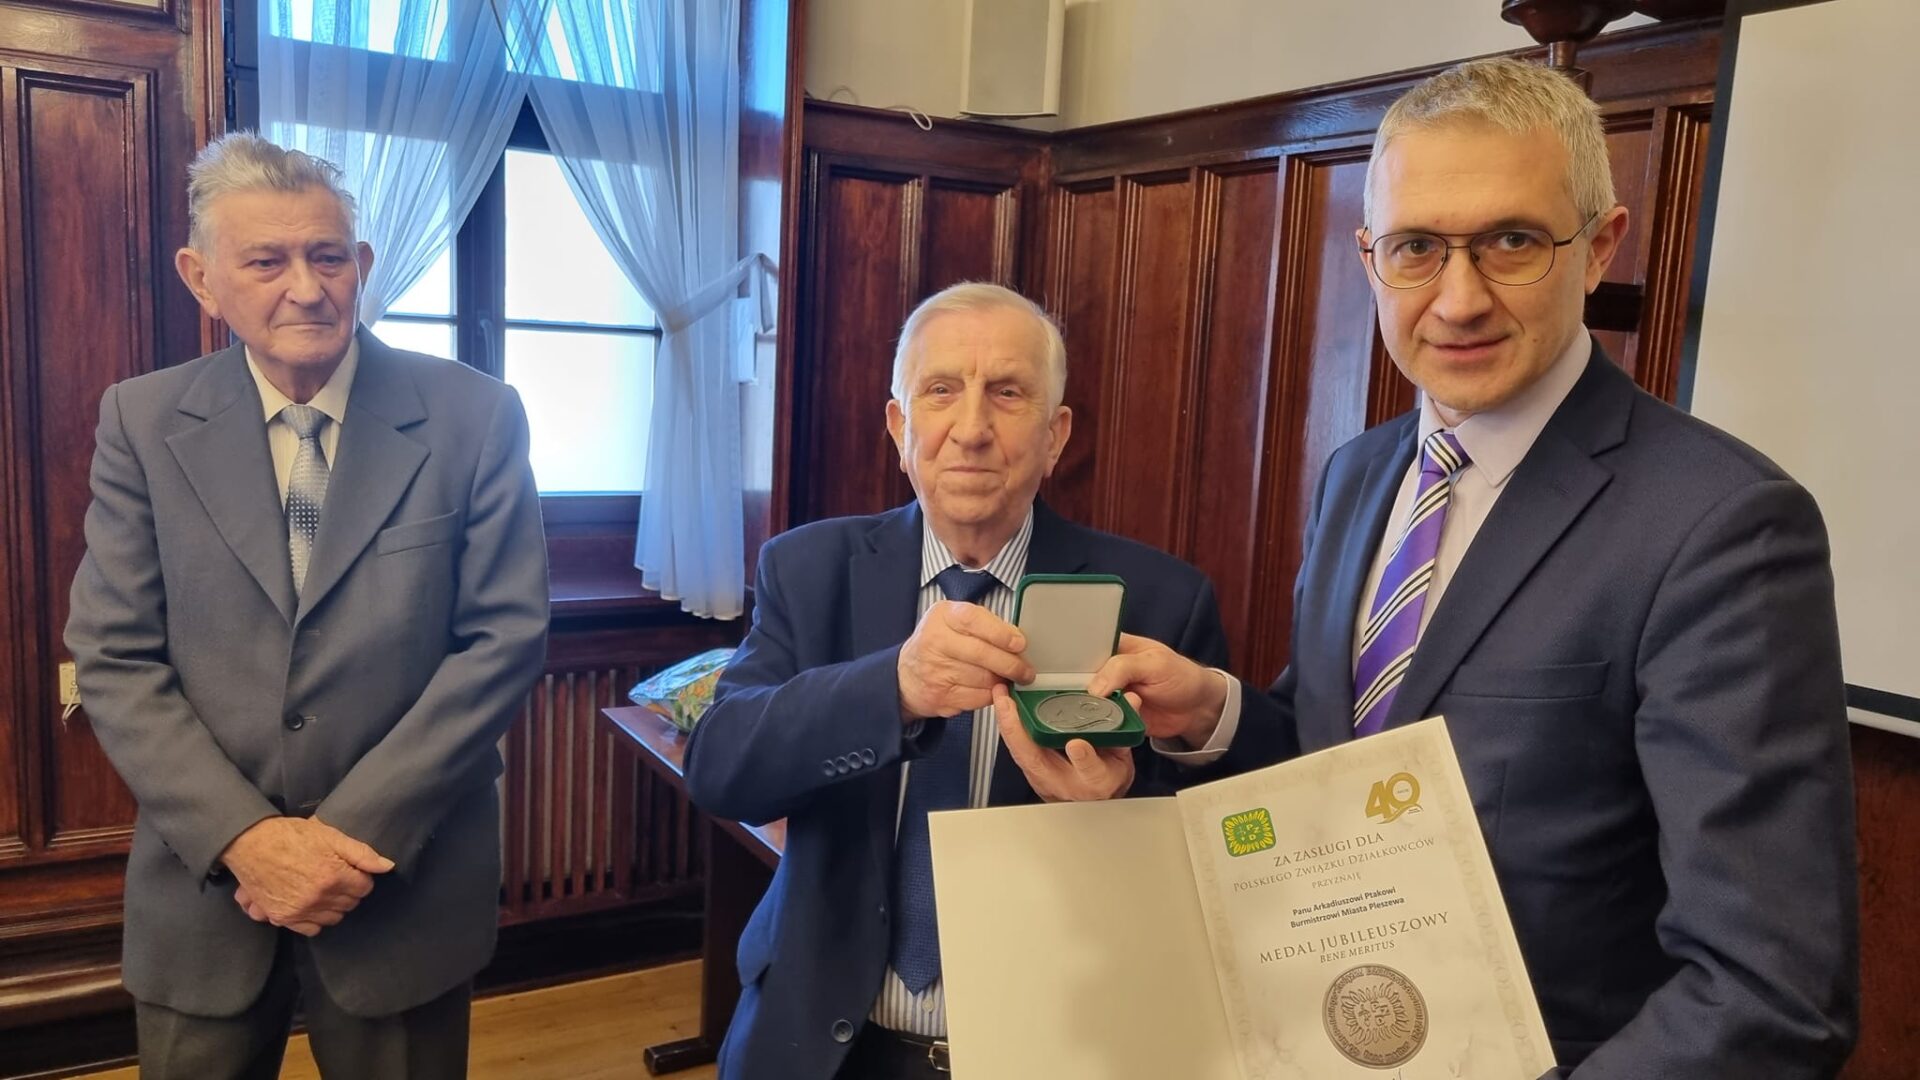 Wręczenie Medalu Jubileuszowego "Bene Meritus" za zasługi dla Polskiego Związku Działkowców burmistrzowi Miasta i Gminy Pleszew